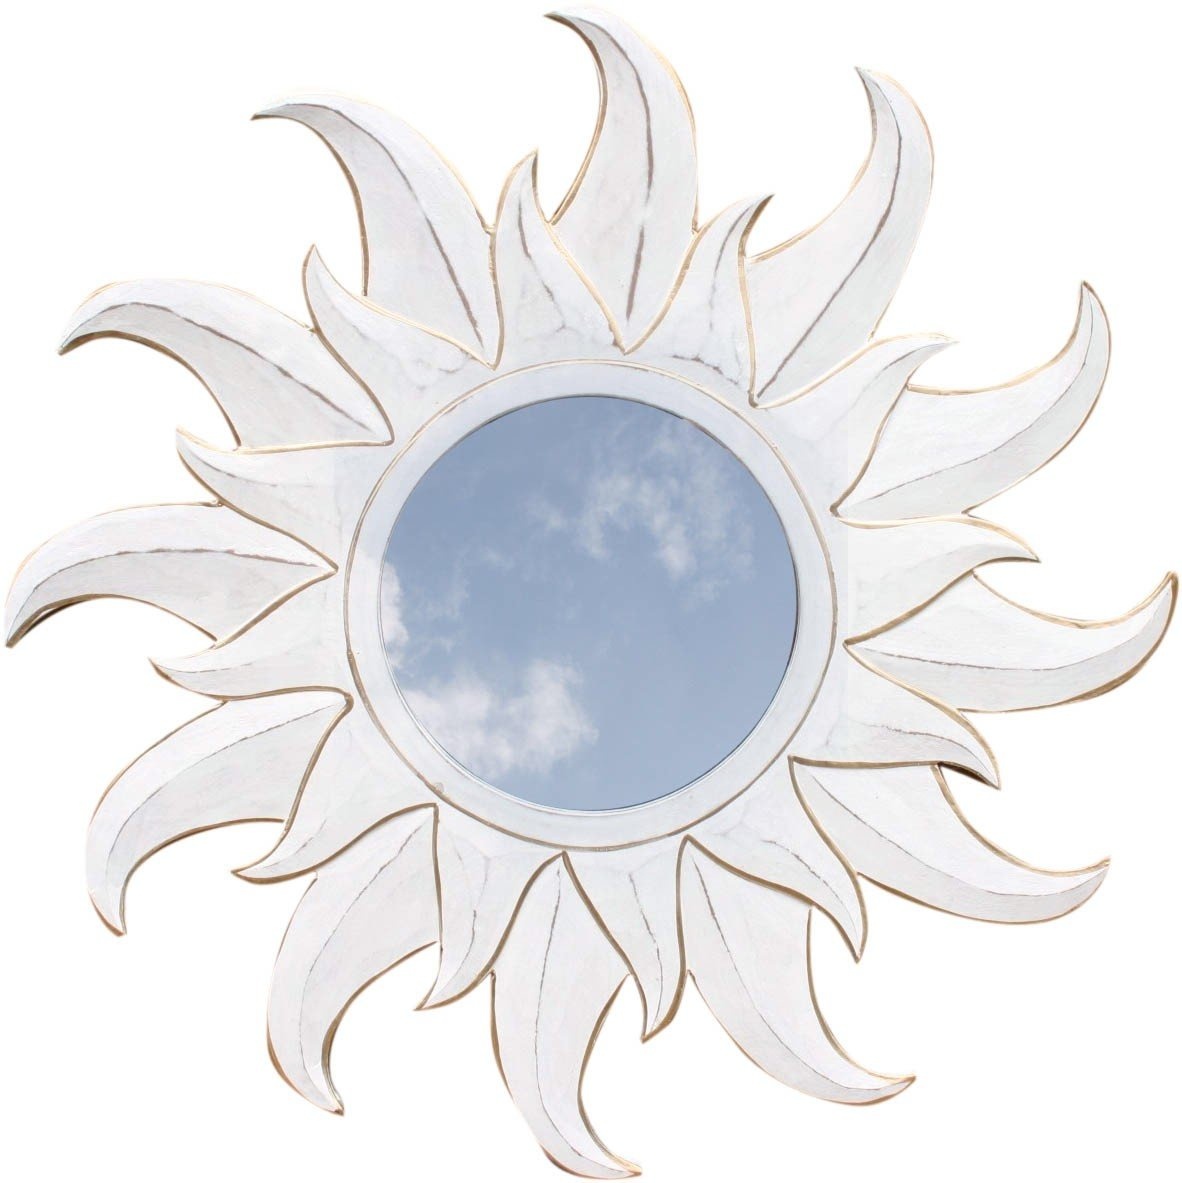 GURU SHOP Sonnenspiegel, Deko Spiegel aus Holz in Sonnenform - Antikweiß 2, Braun, 60x60x1 cm, Dekoration Fürs Kinderzimmer